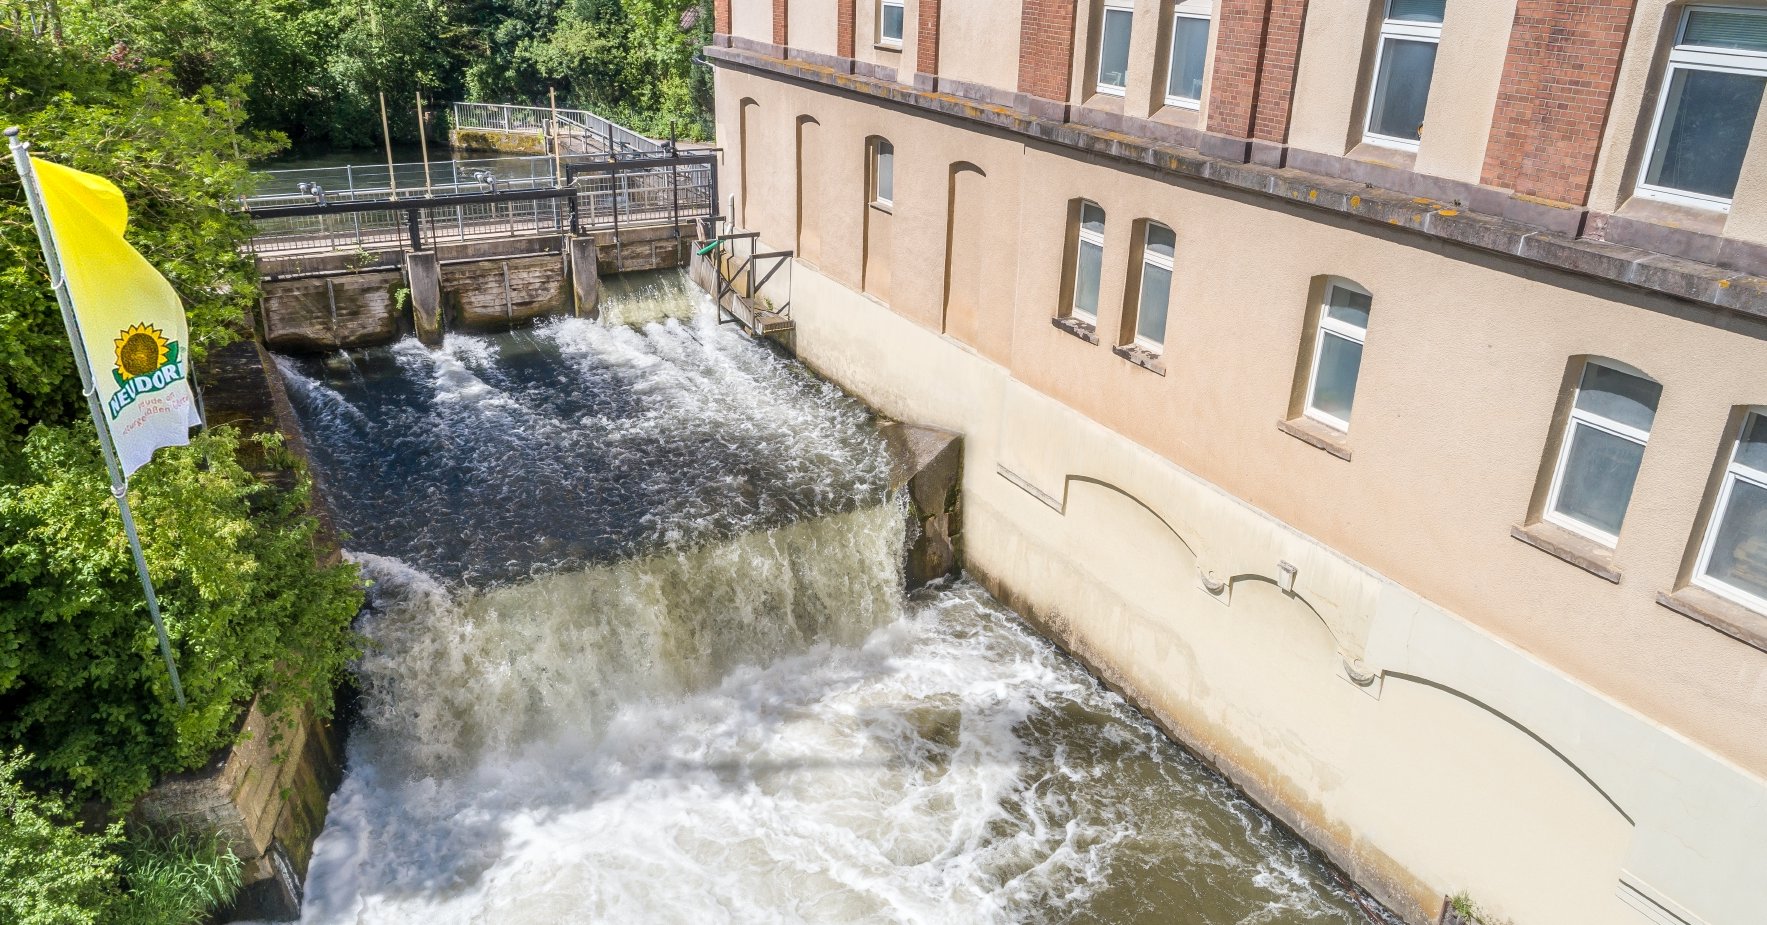 Vannkraft fra elven Emmer lar oss produsere deler av energien vi trenger på en miljøvennlig måte